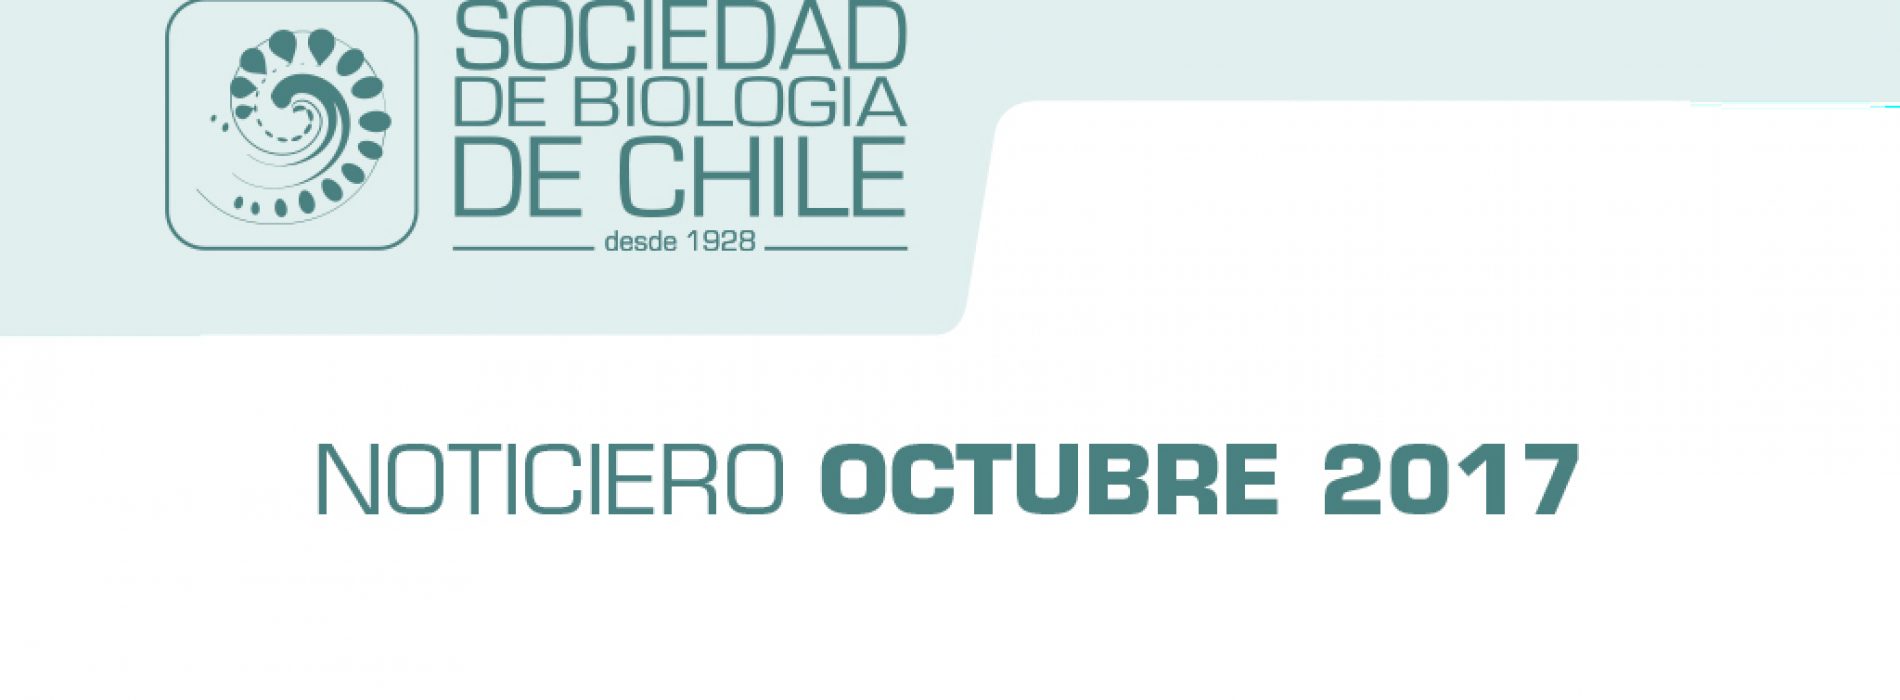 Noticiero Mes de Octubre 2017, Sociedad de Biología de Chile